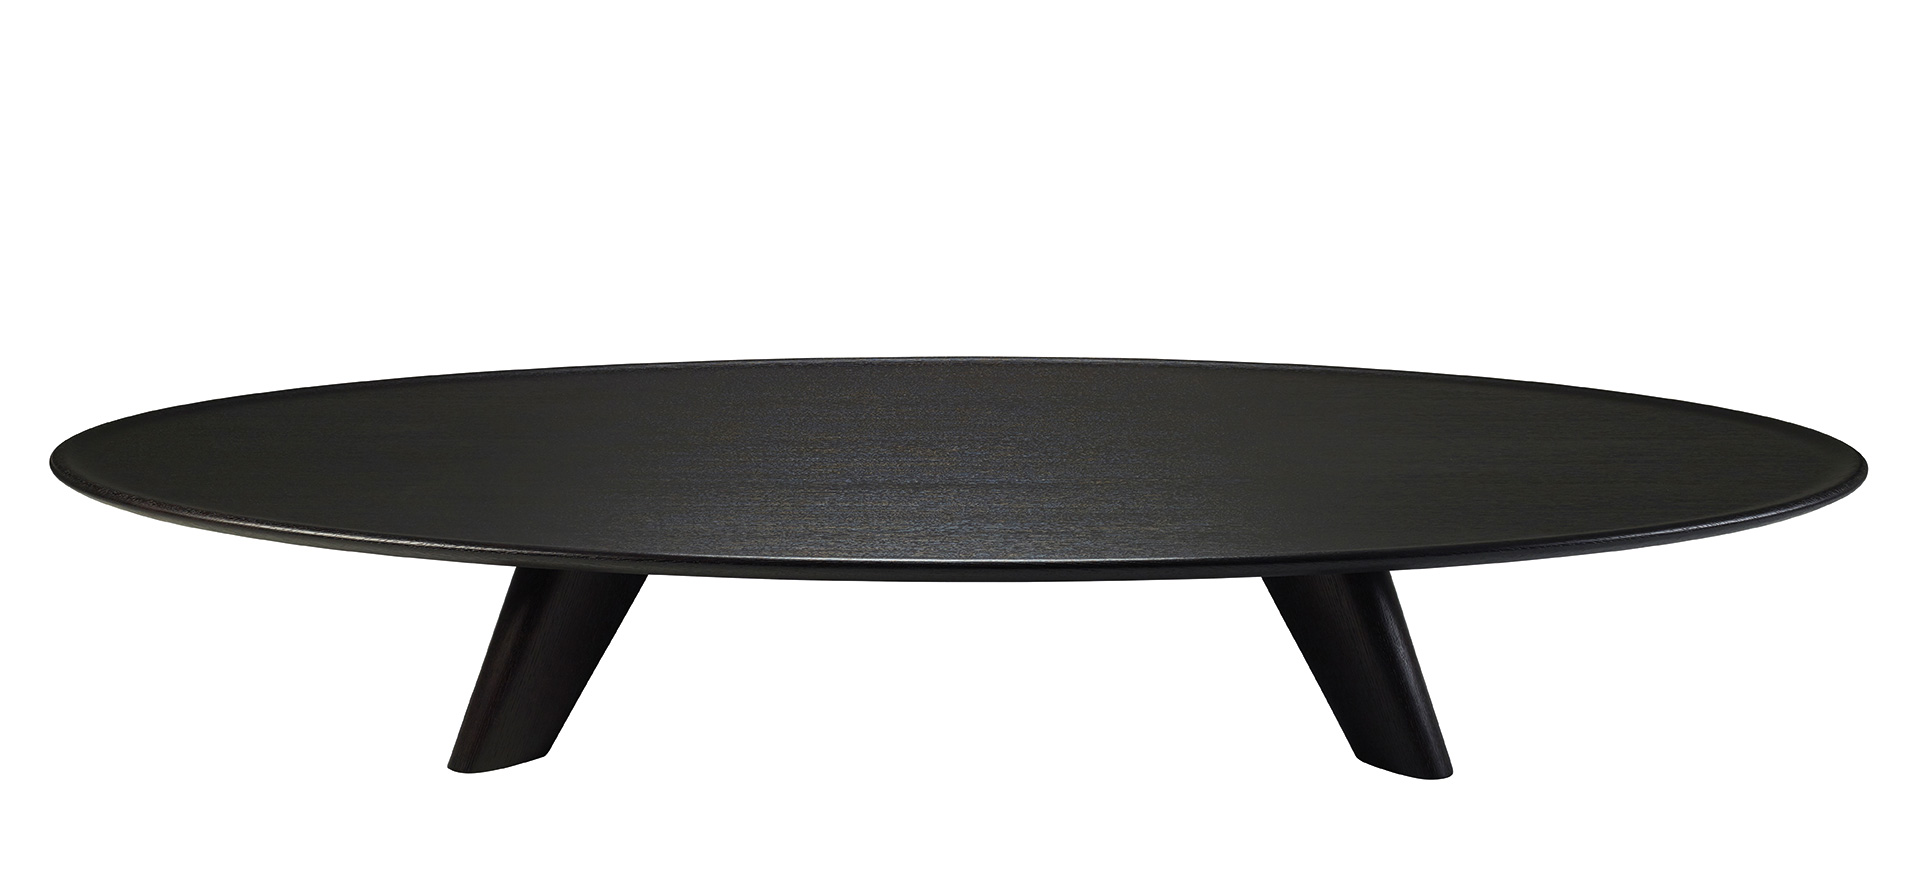 /mediaDjennè是一款以简约风格设计的实木咖啡桌，搭配经圆形和凹槽纹饰处理的轮廓，属于Promemoria%20Indigo%20Tales系列%20|%20Promemoria